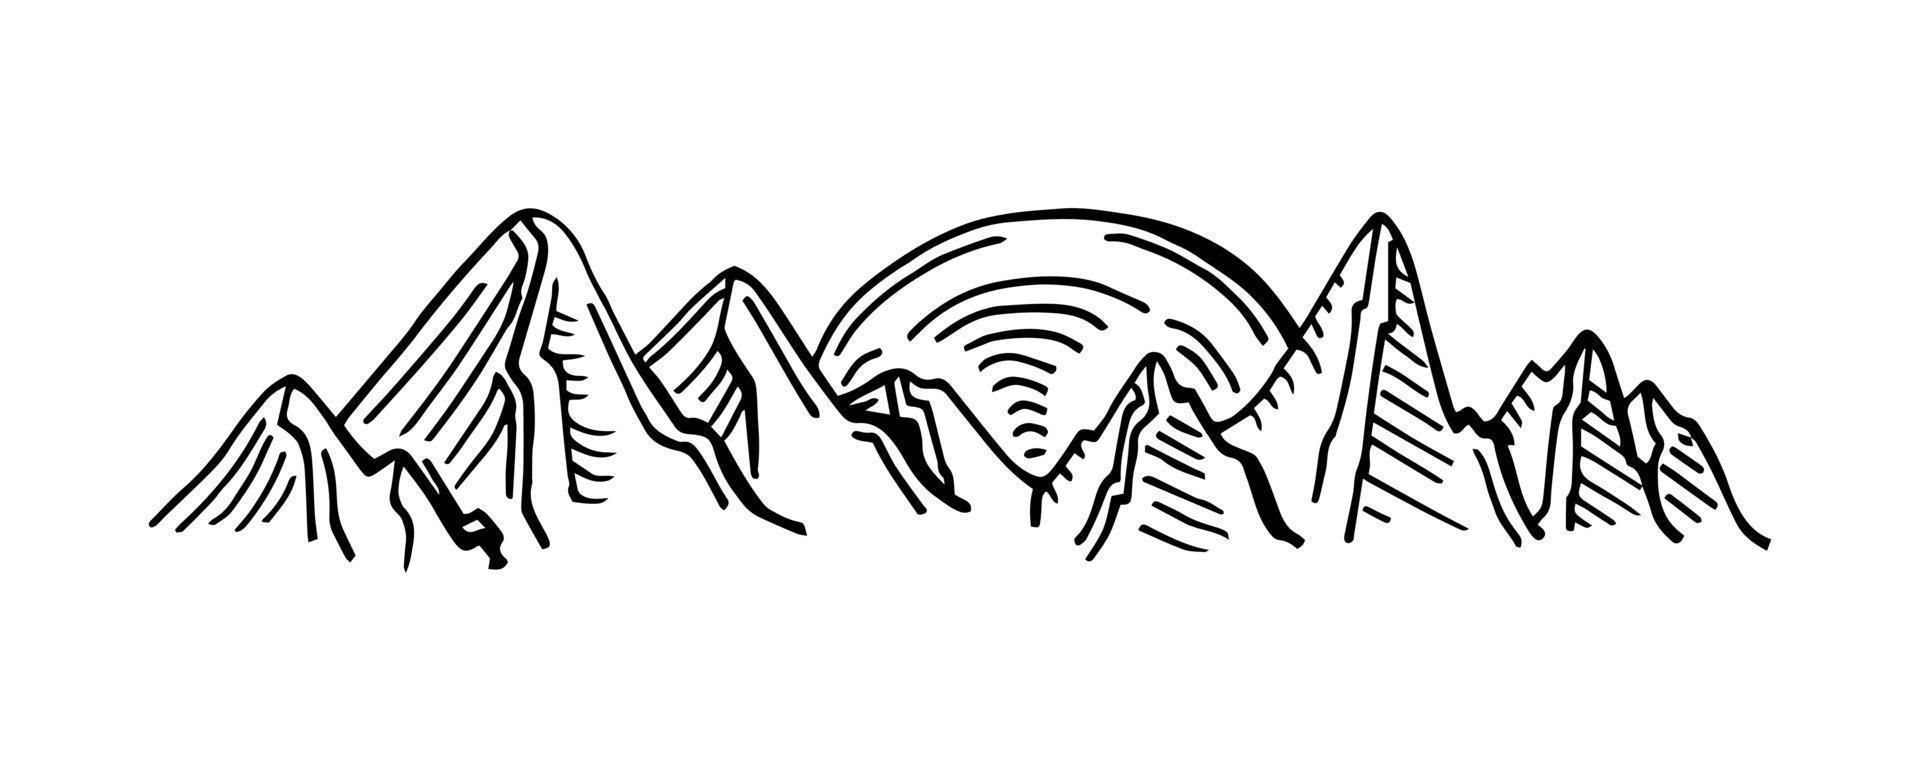 montagna gamma grafico nero bianca paesaggio schizzo illustrazione vettore